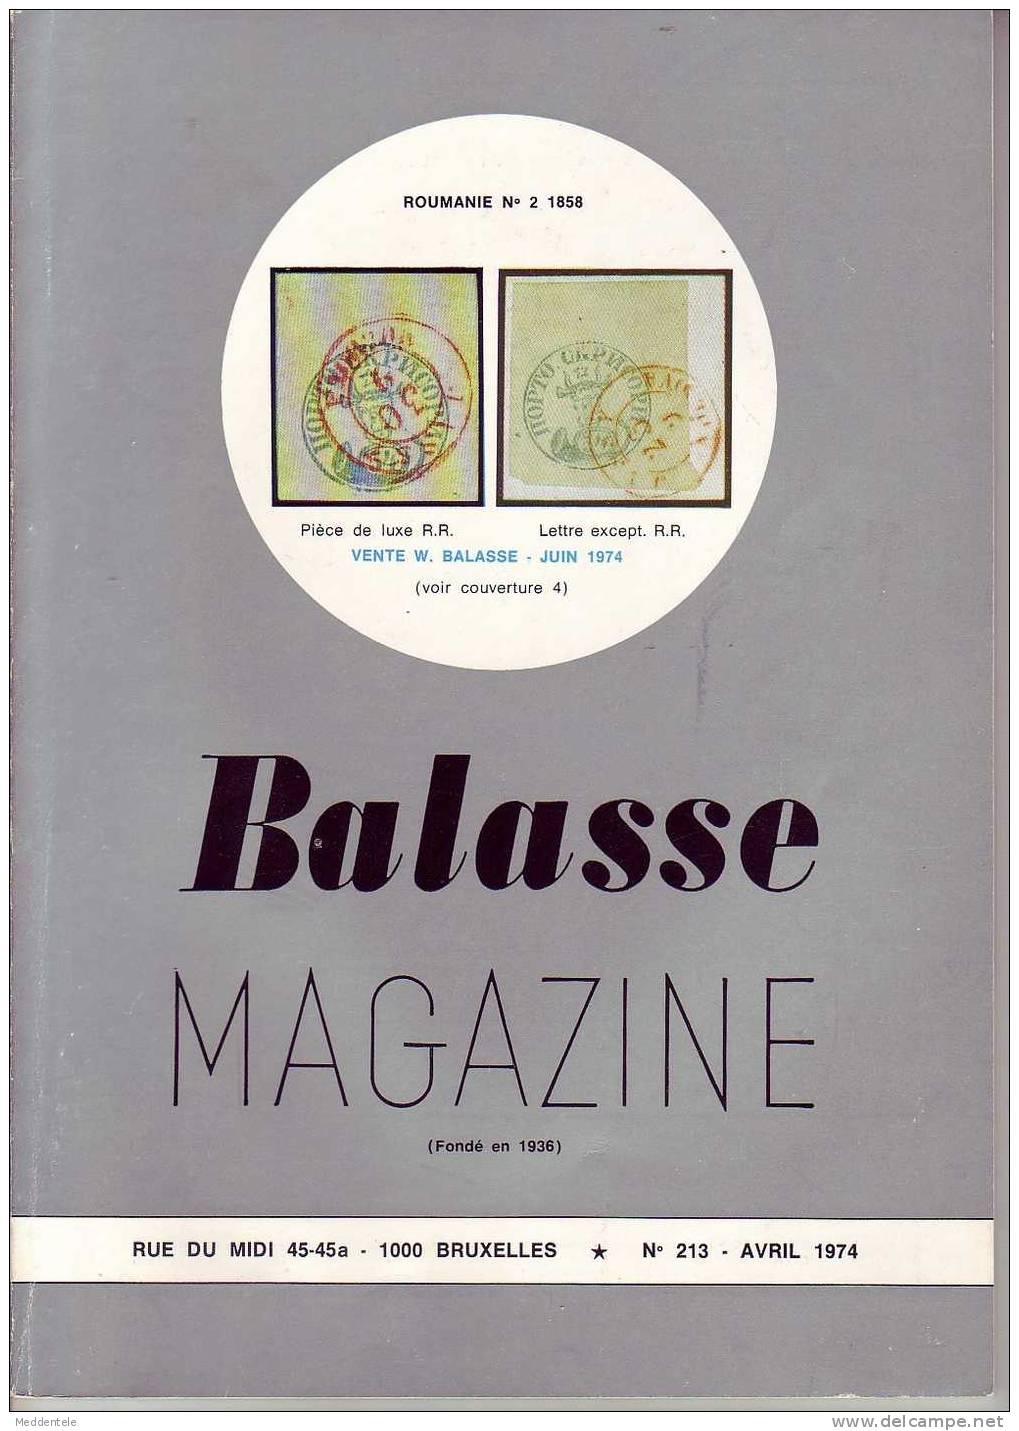 BALASSE MAGAZINE N° 213 - Français (àpd. 1941)